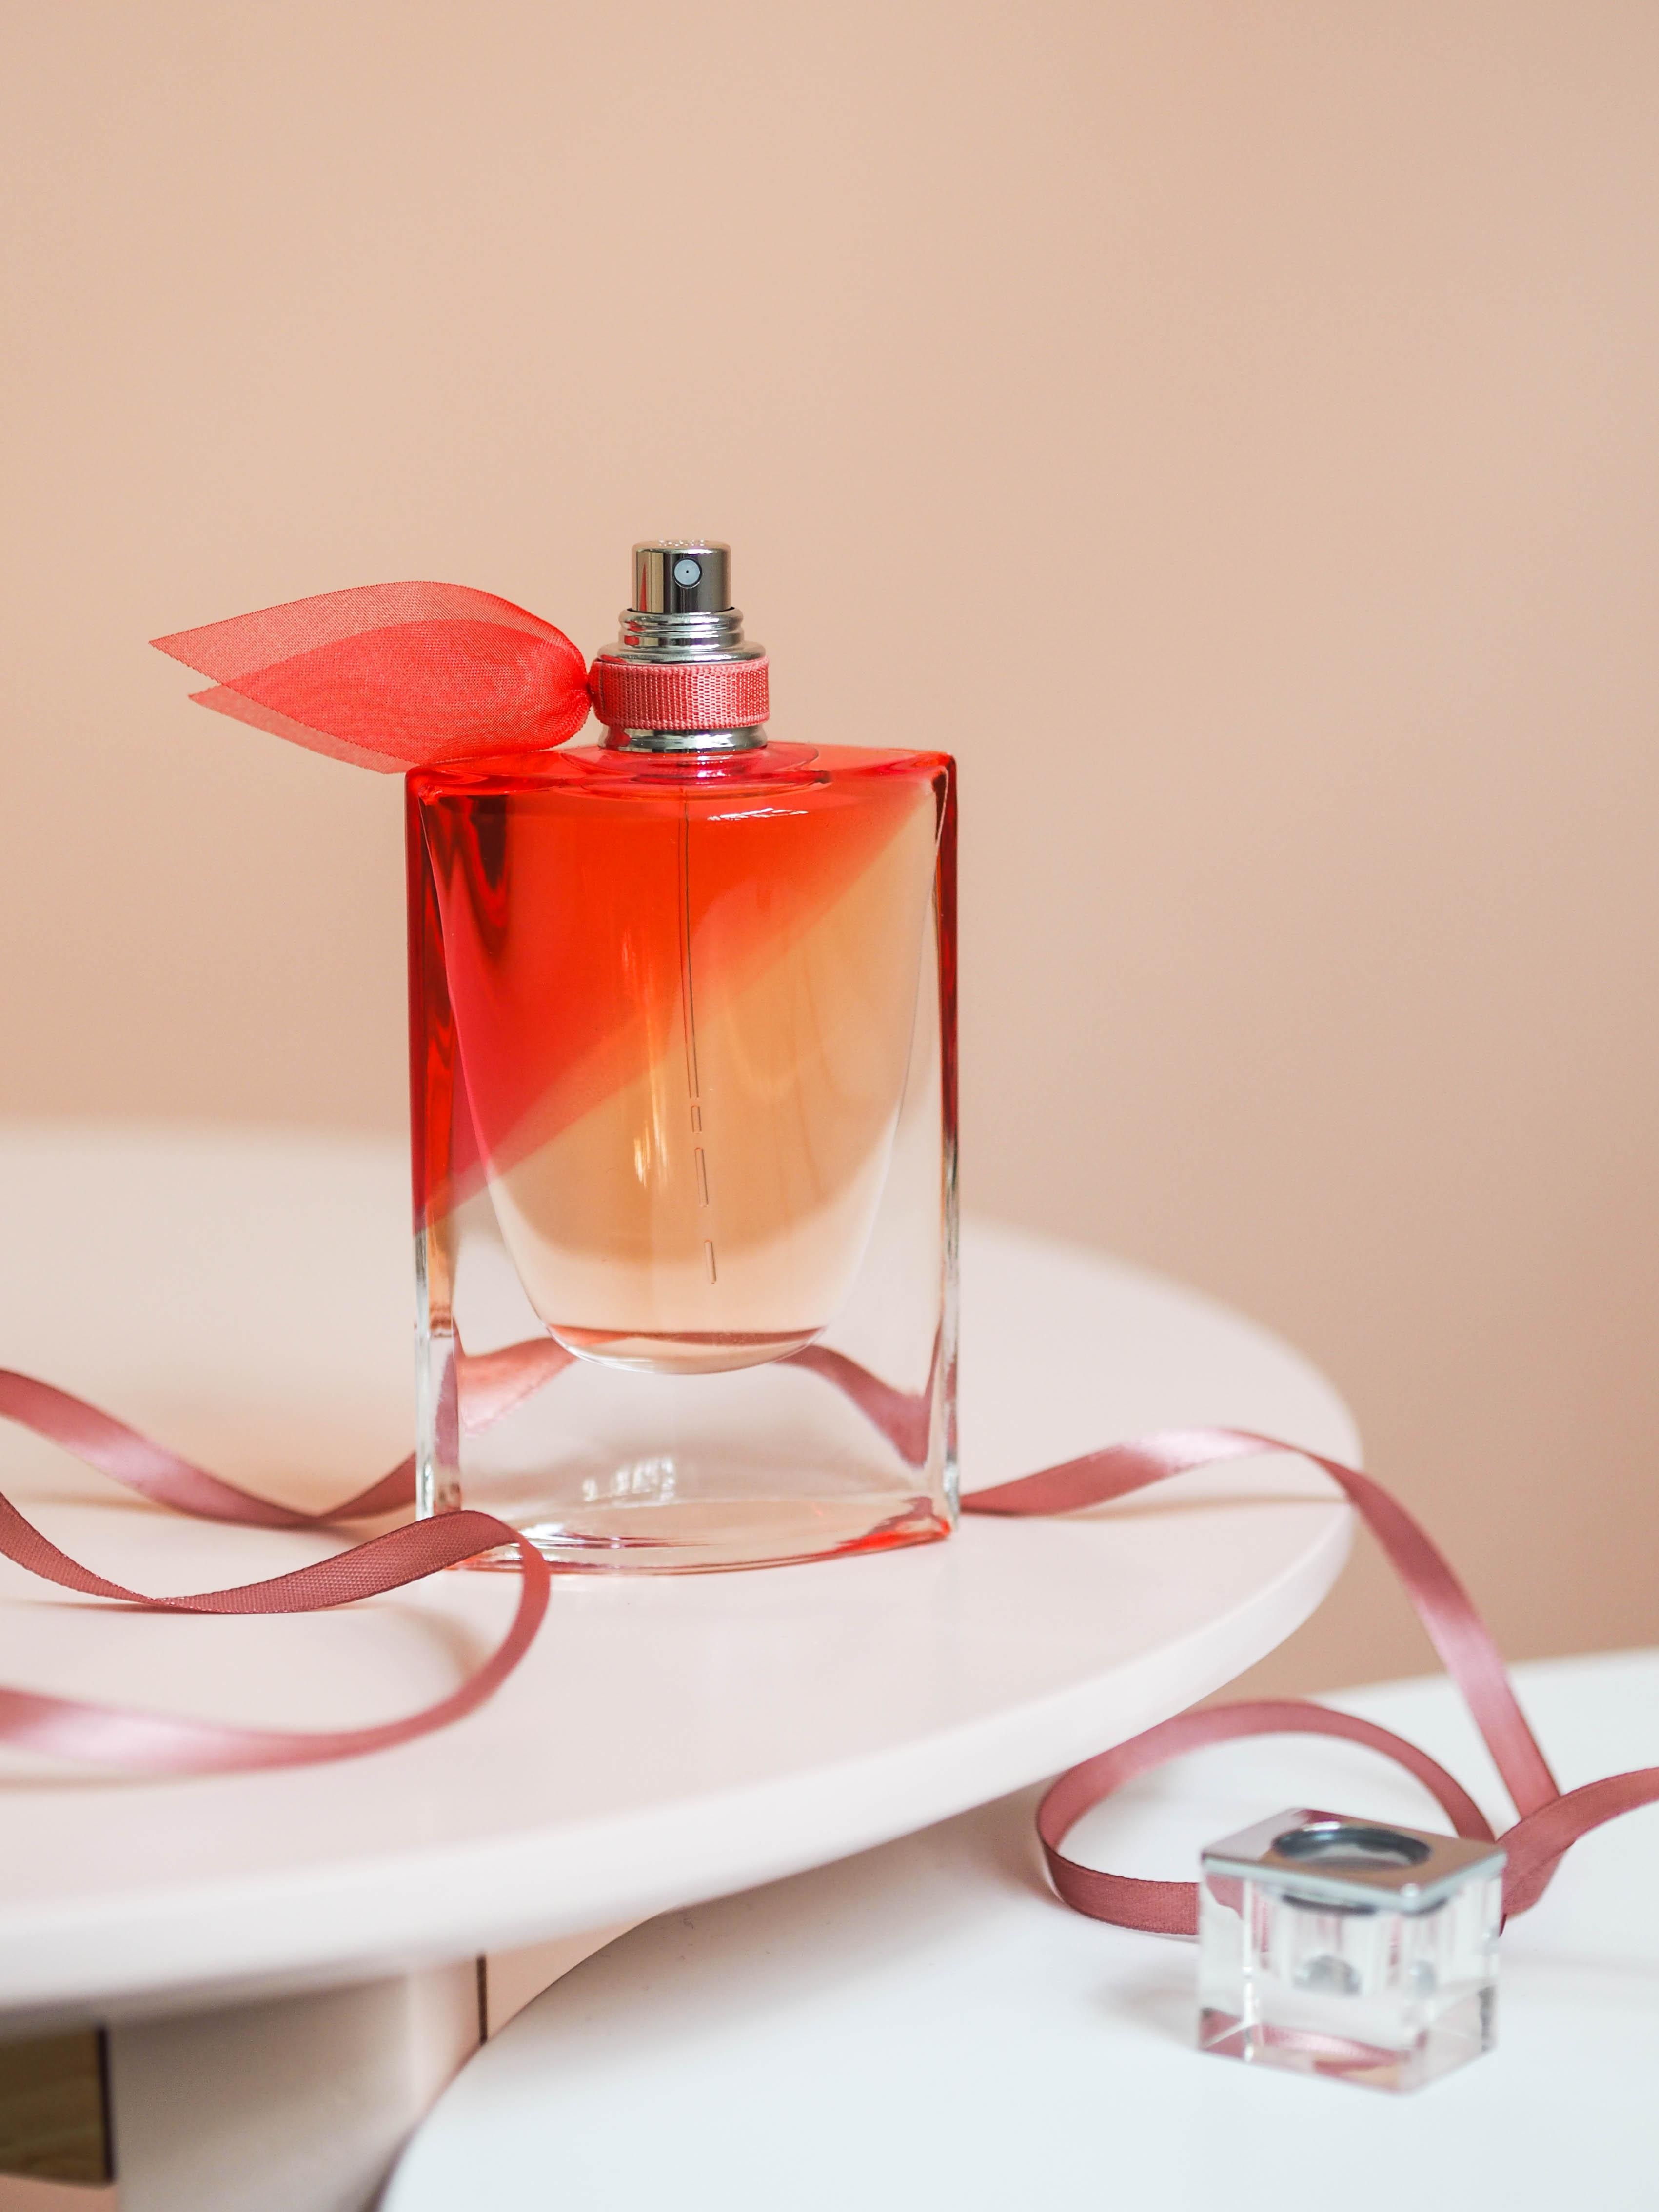 Macht das Leben noch schöner: Das blumige "La Vie est Belle En Rose“ von Lancôme #beautylieblinge #lancome #parfum